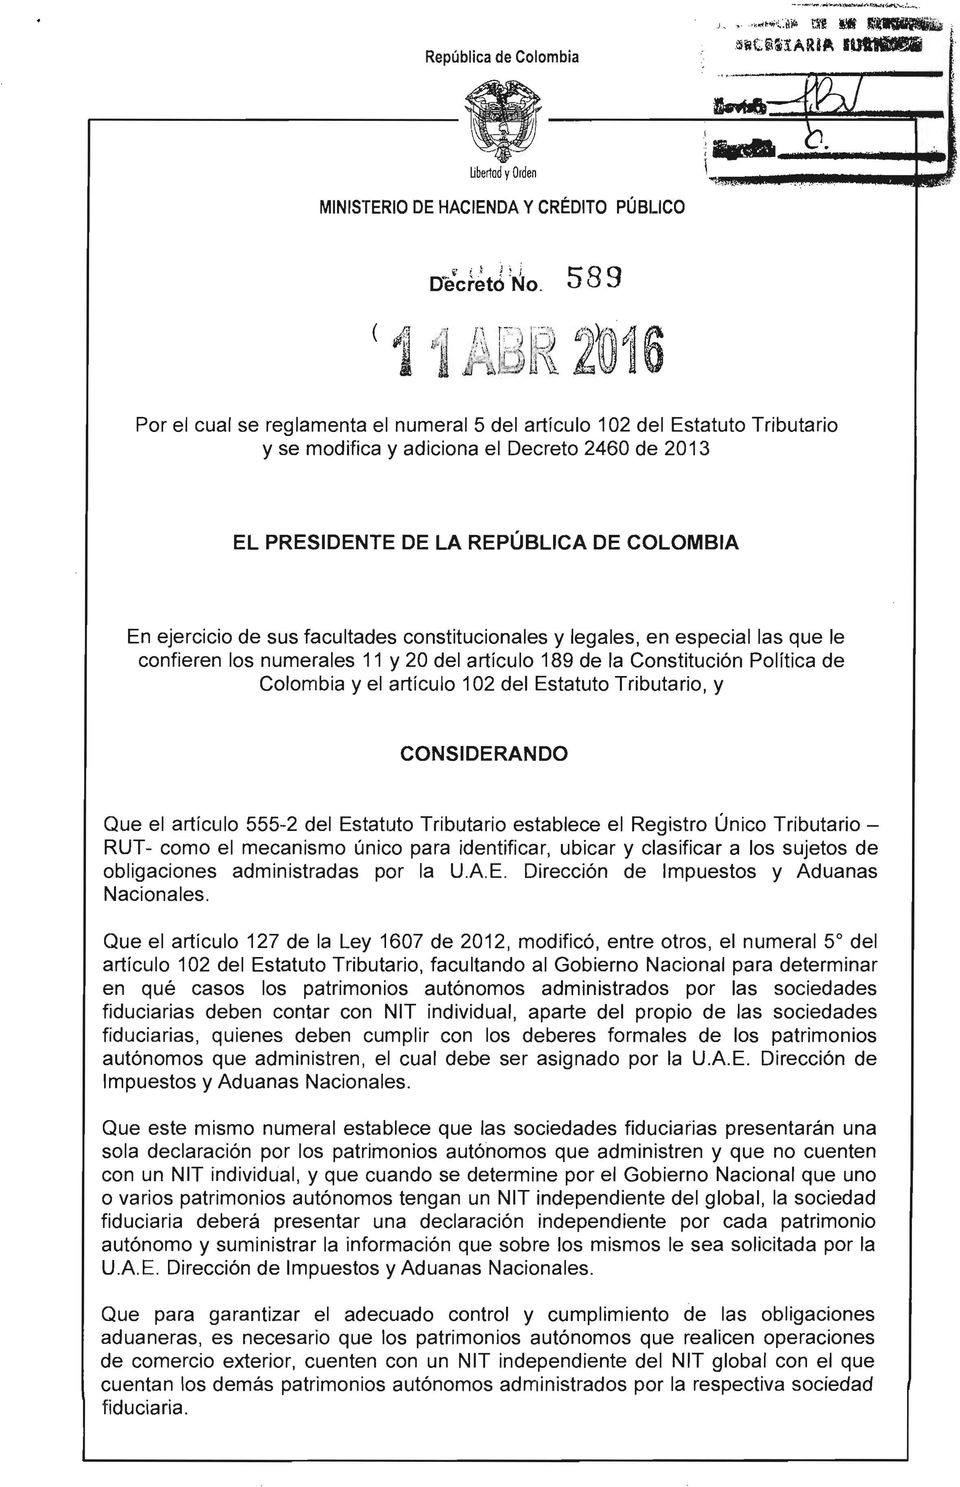 REPÚBLICA DE COLOMBIA En ejercicio de sus facultades constitucionales y legales, en especial las que le confieren los numerales 11 y 20 del artículo 189 de la Constitución Política de Colombia y el